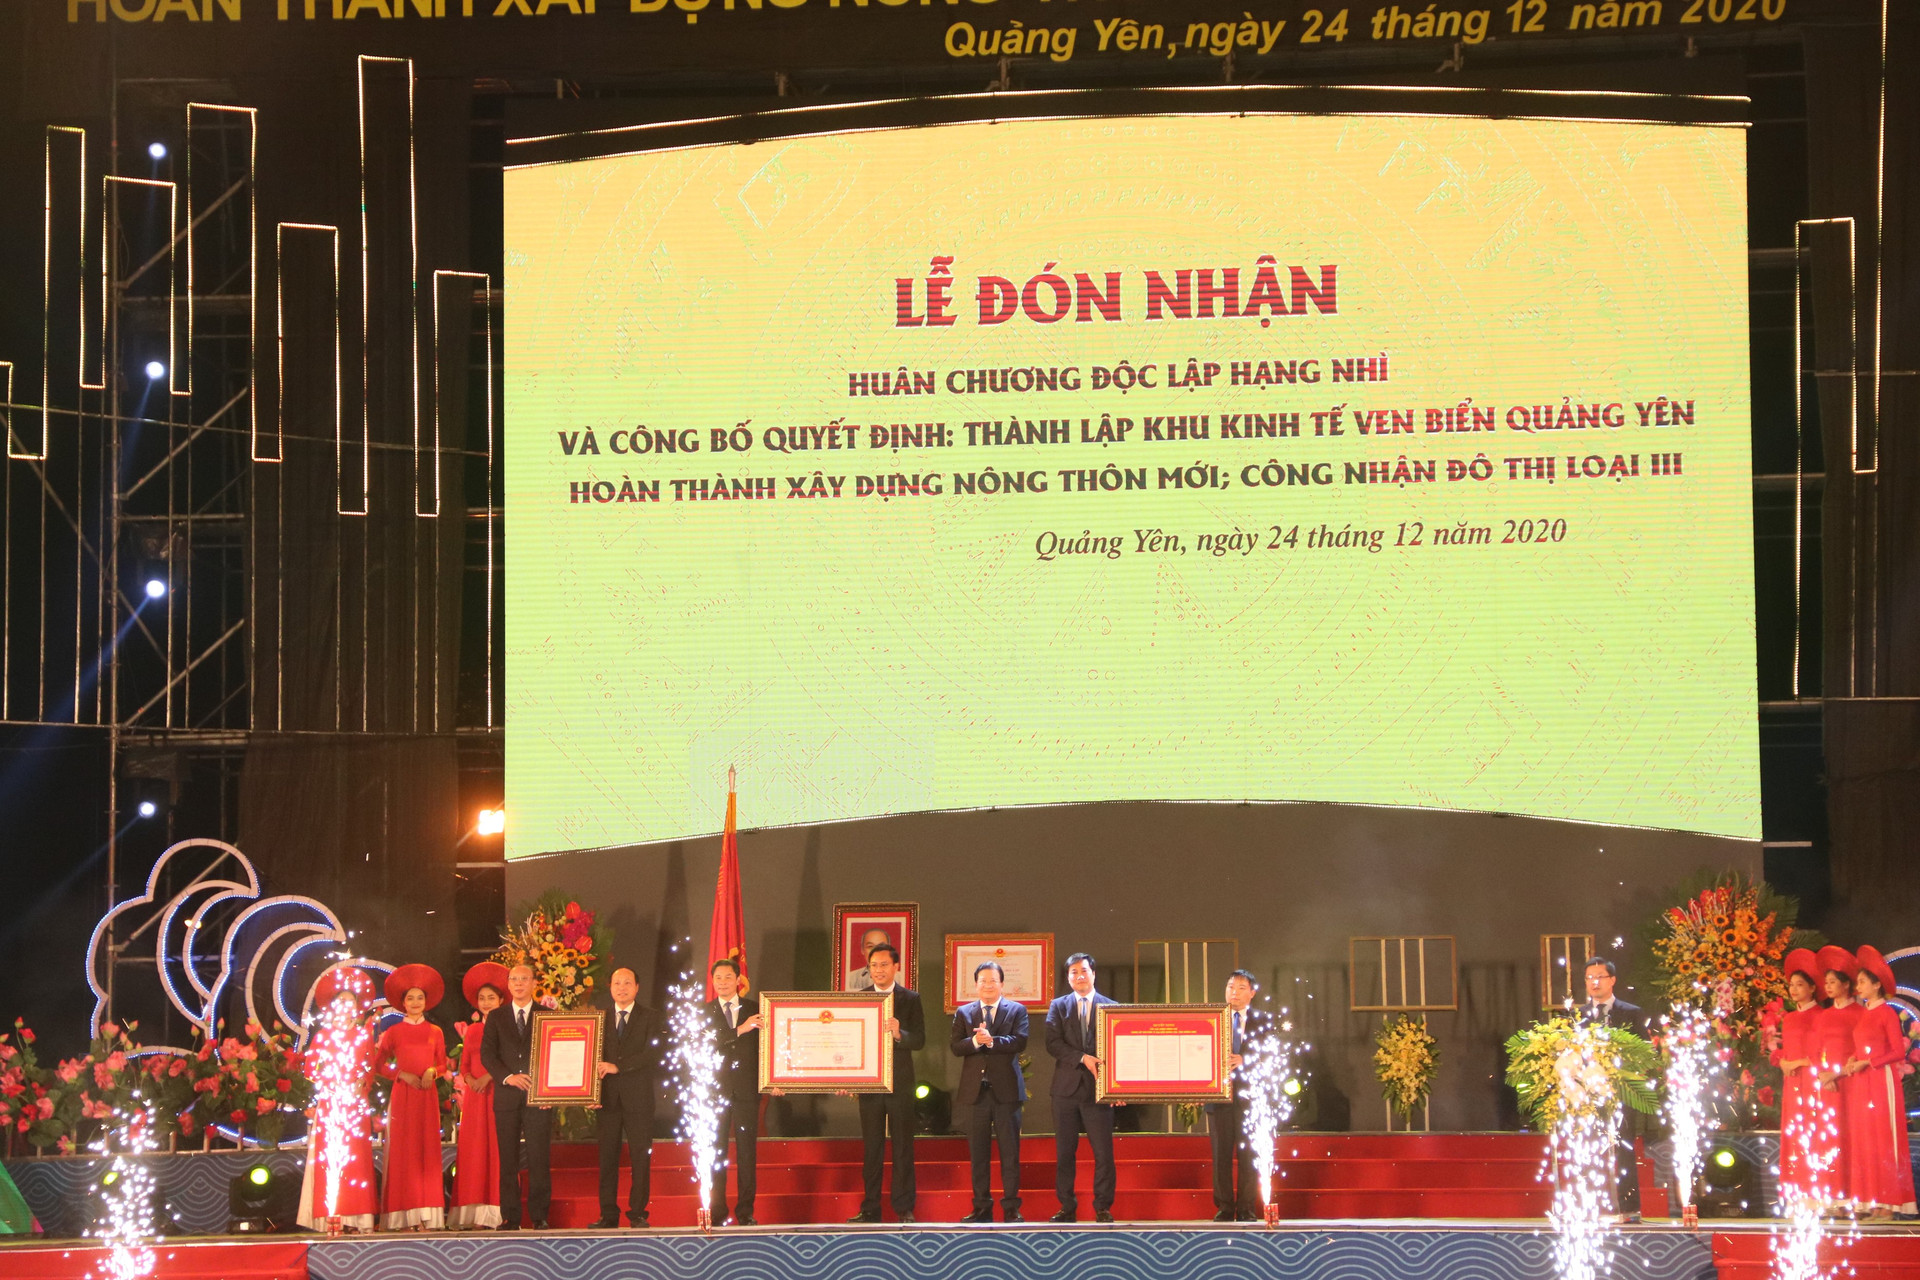  Phó Thủ tướng trao quyết định thành lập Khu kinh tế ven biển Quảng Yên và công nhận đô thị loại III đối với thị xã Quảng Yên.